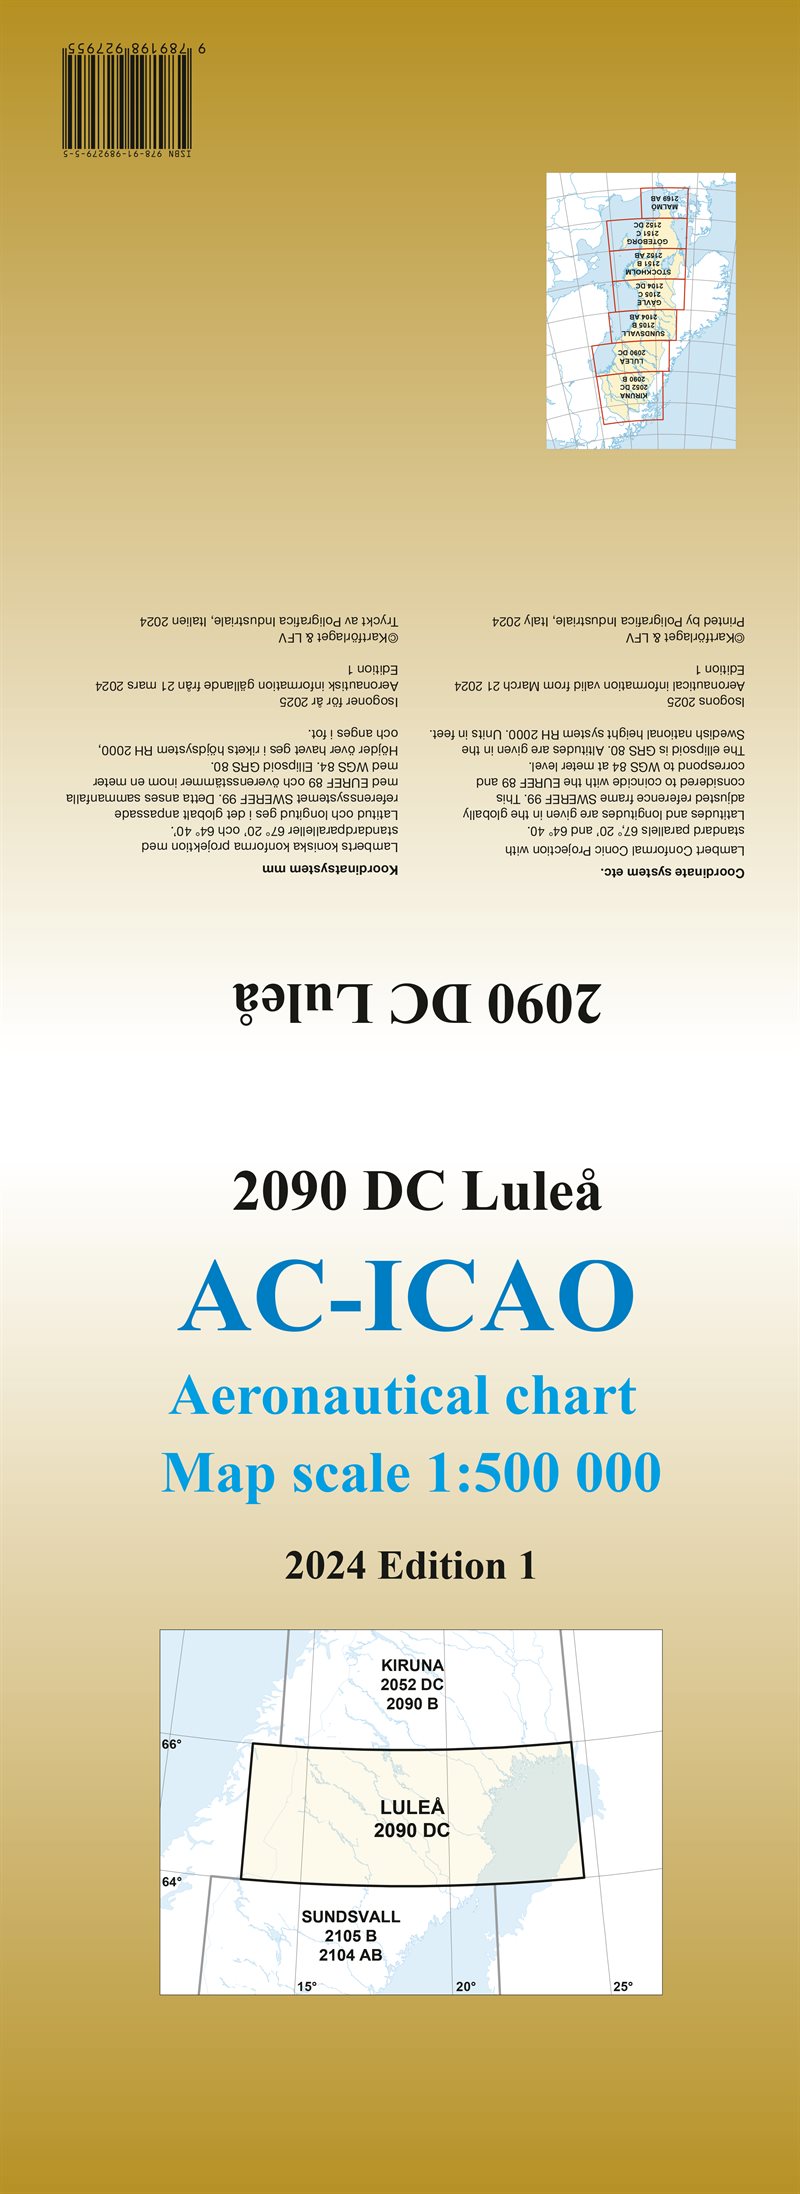 ACICAO 2090DC Luleå 2024 : Skala 1:500 000